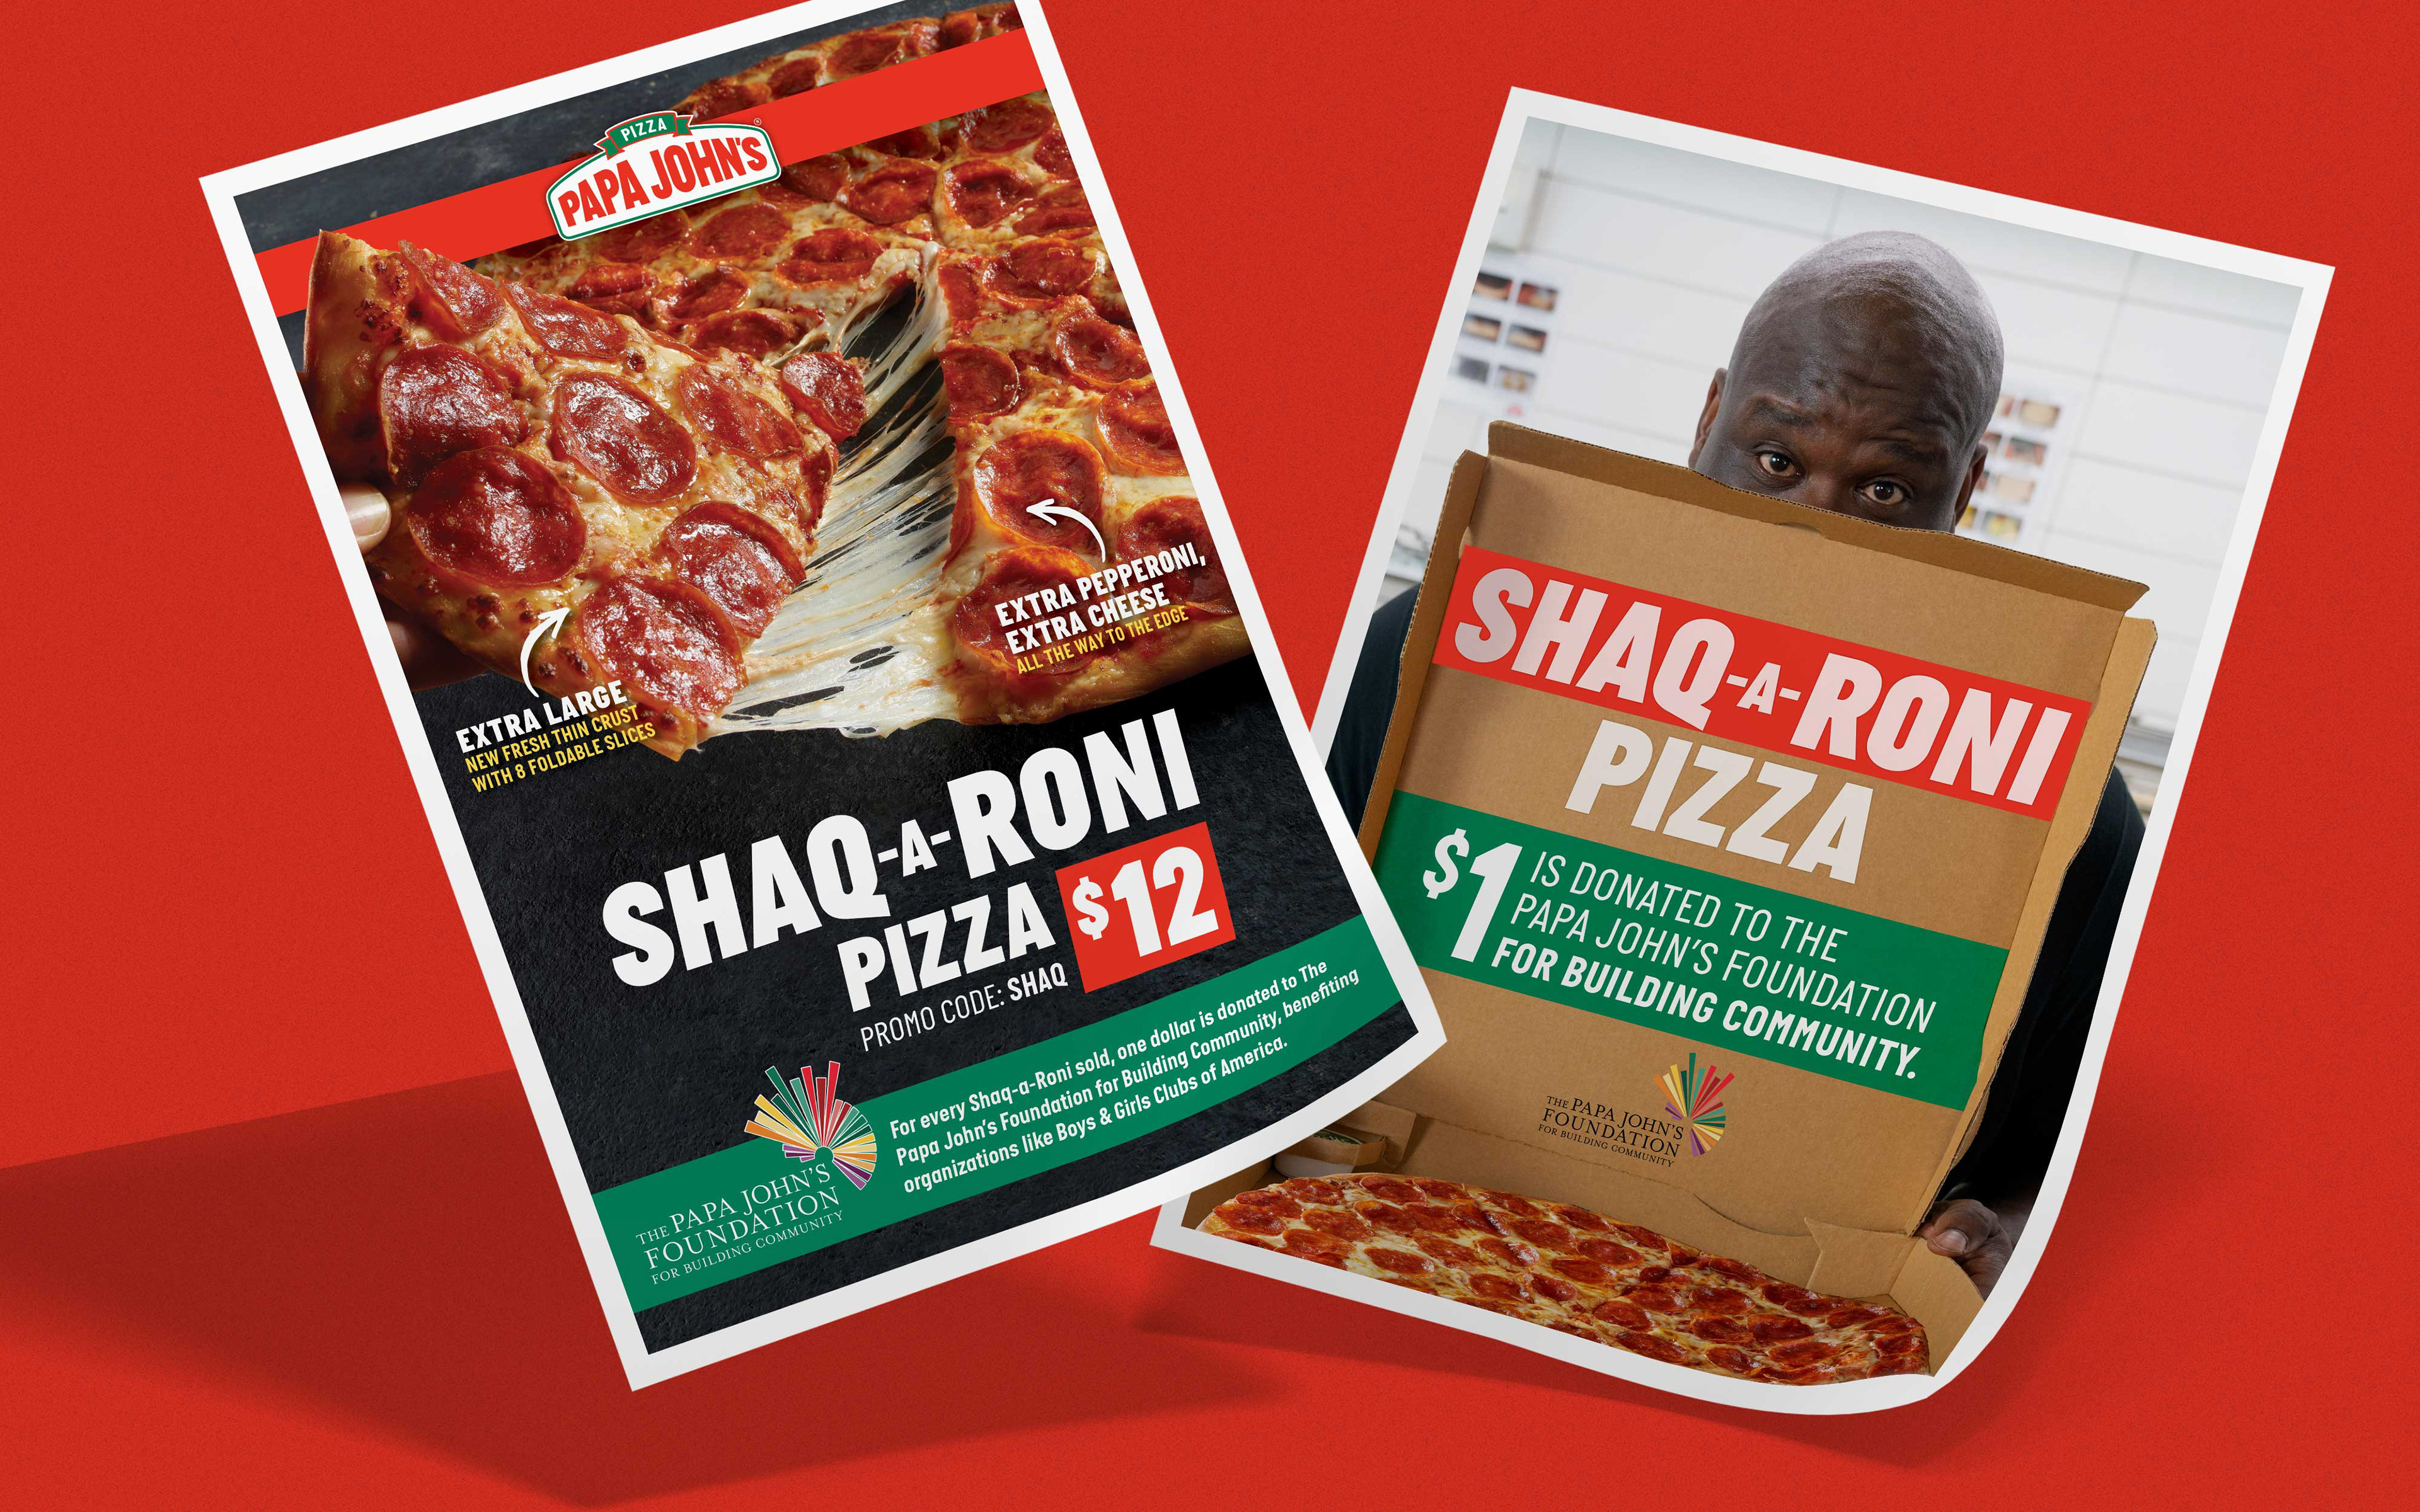 Shaq-a-Roni Pizza